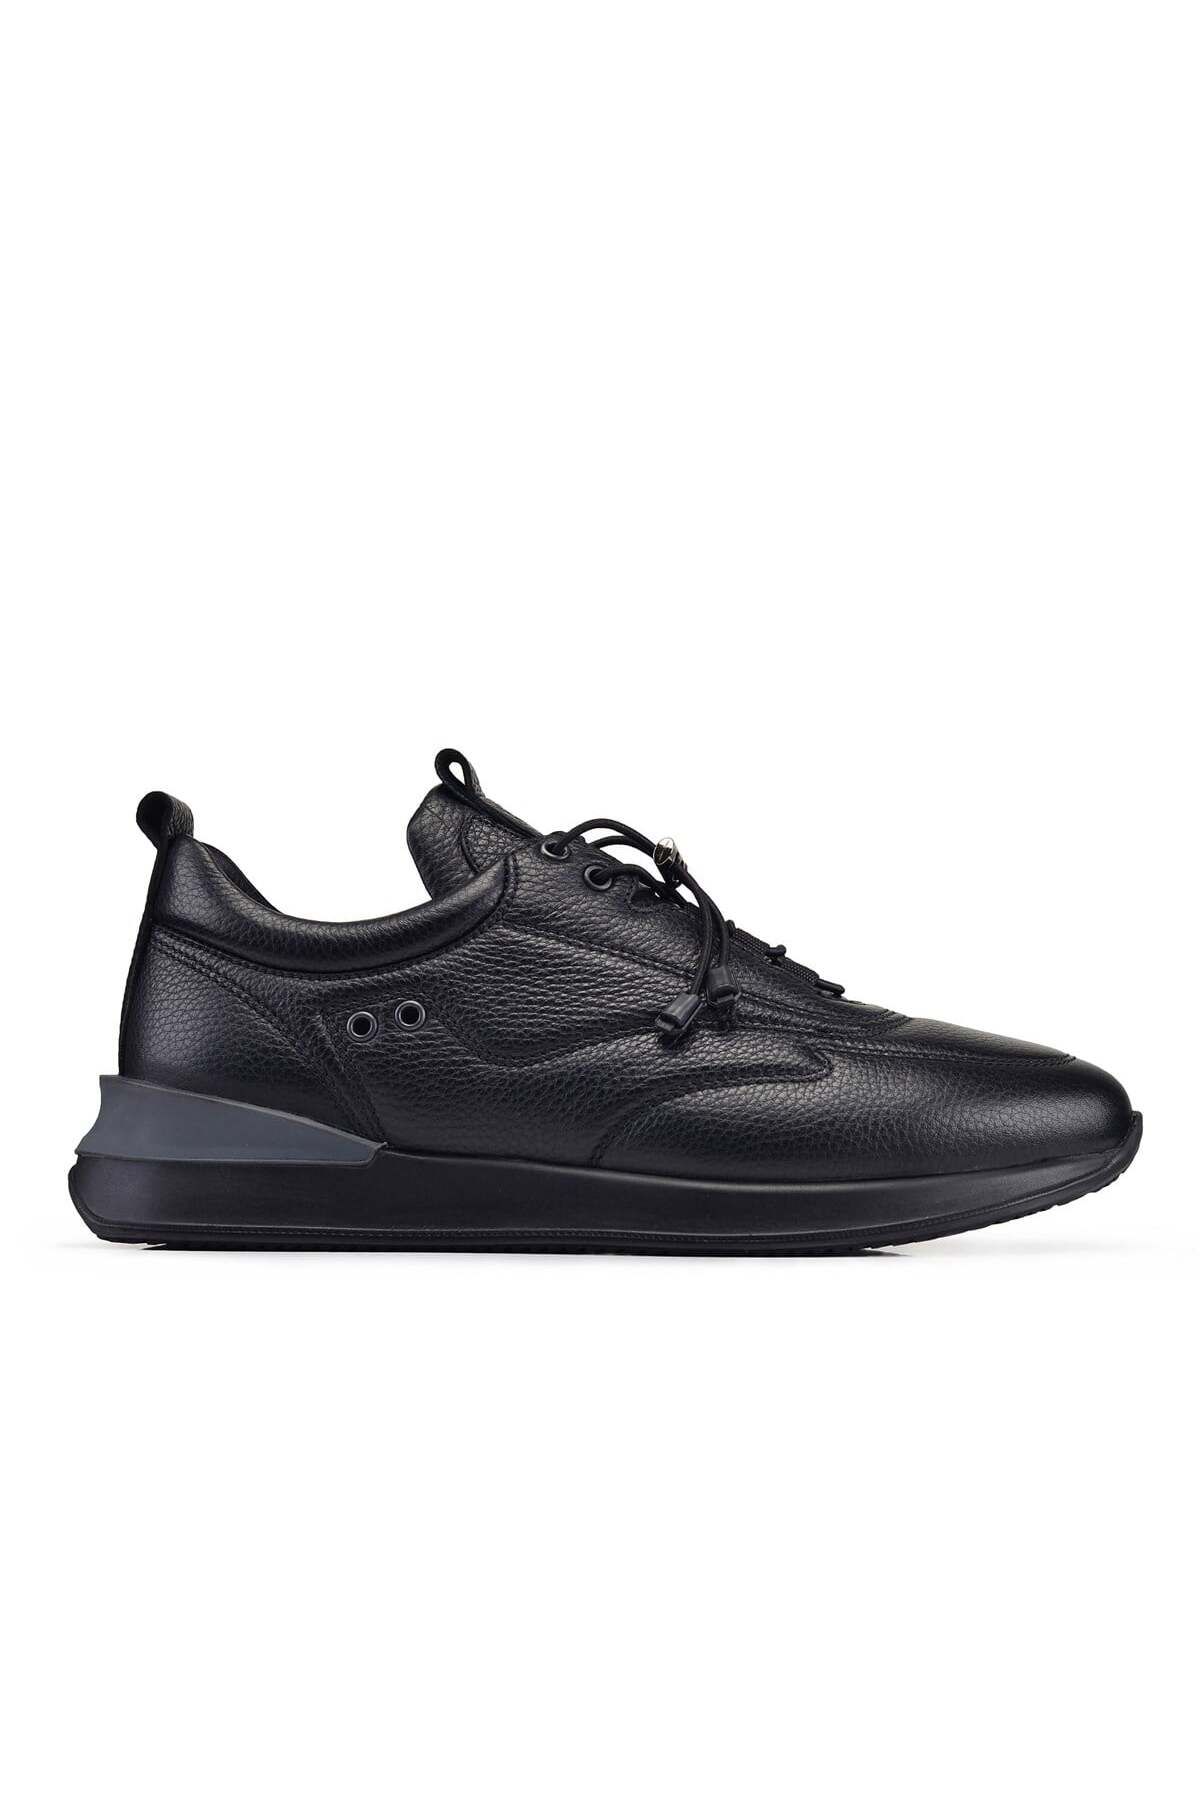 Nevzat Onay Siyah Bağcıklı Erkek Sneaker -71152-